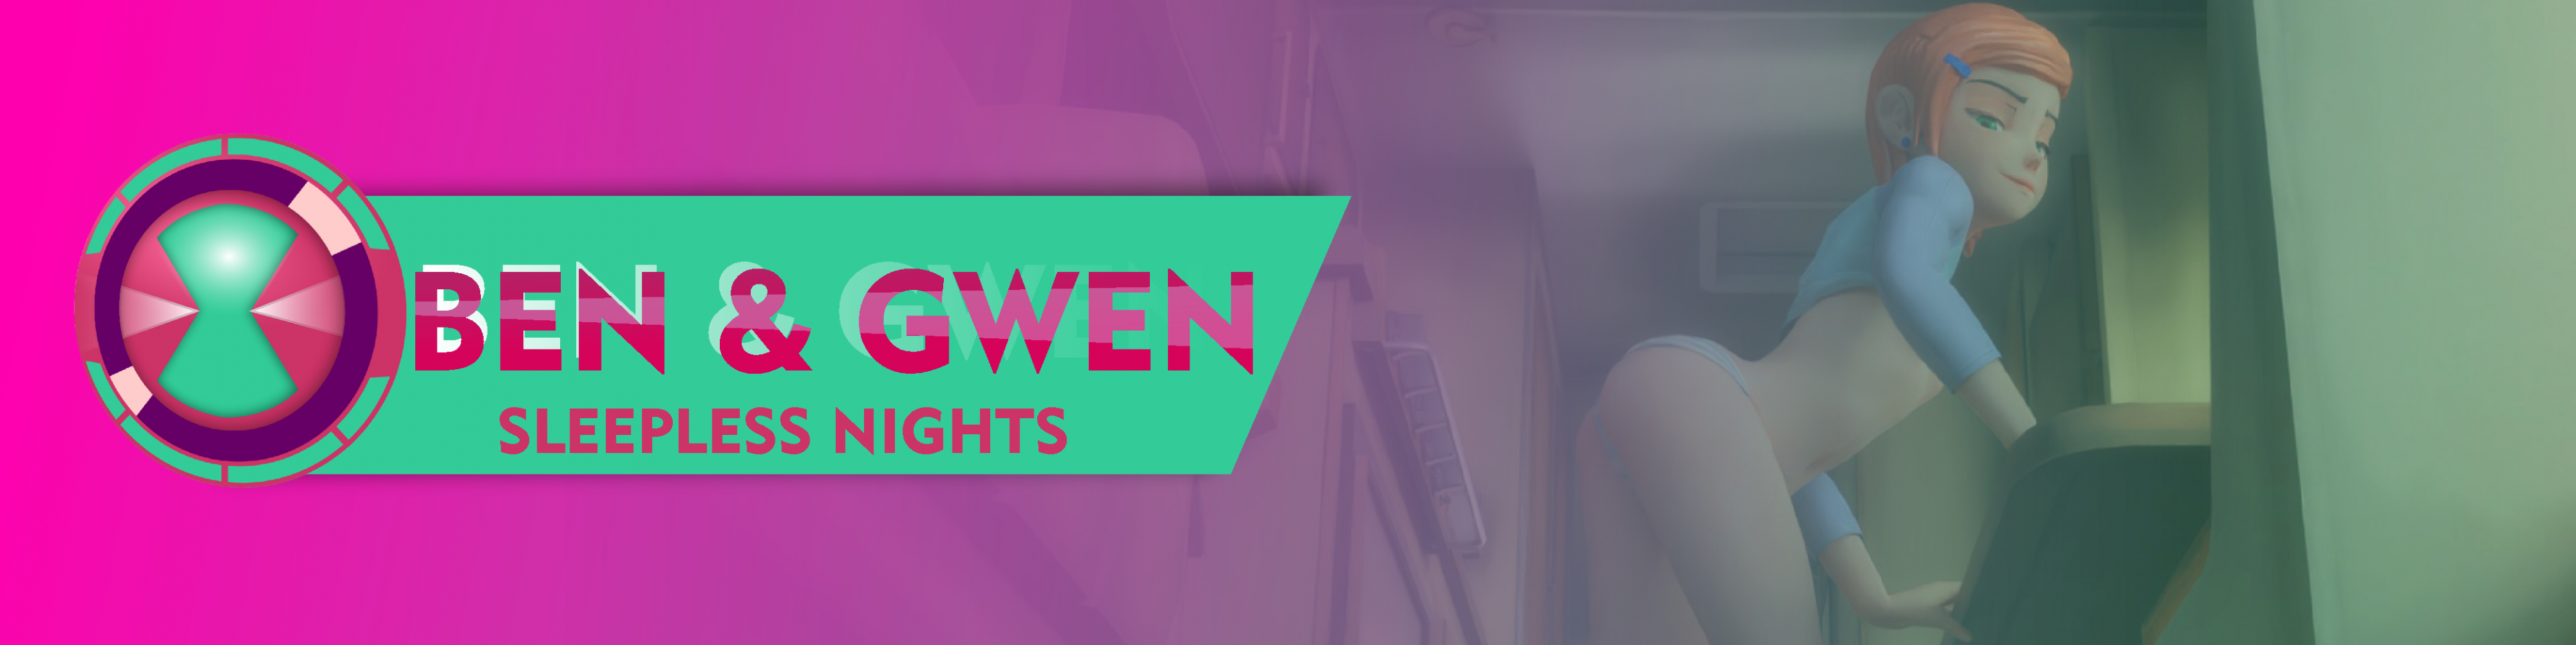 Ben 10 Gwen Flash - Ben & Gwen Sleepless Nights v0.02 - free game download, reviews, mega -  xGames